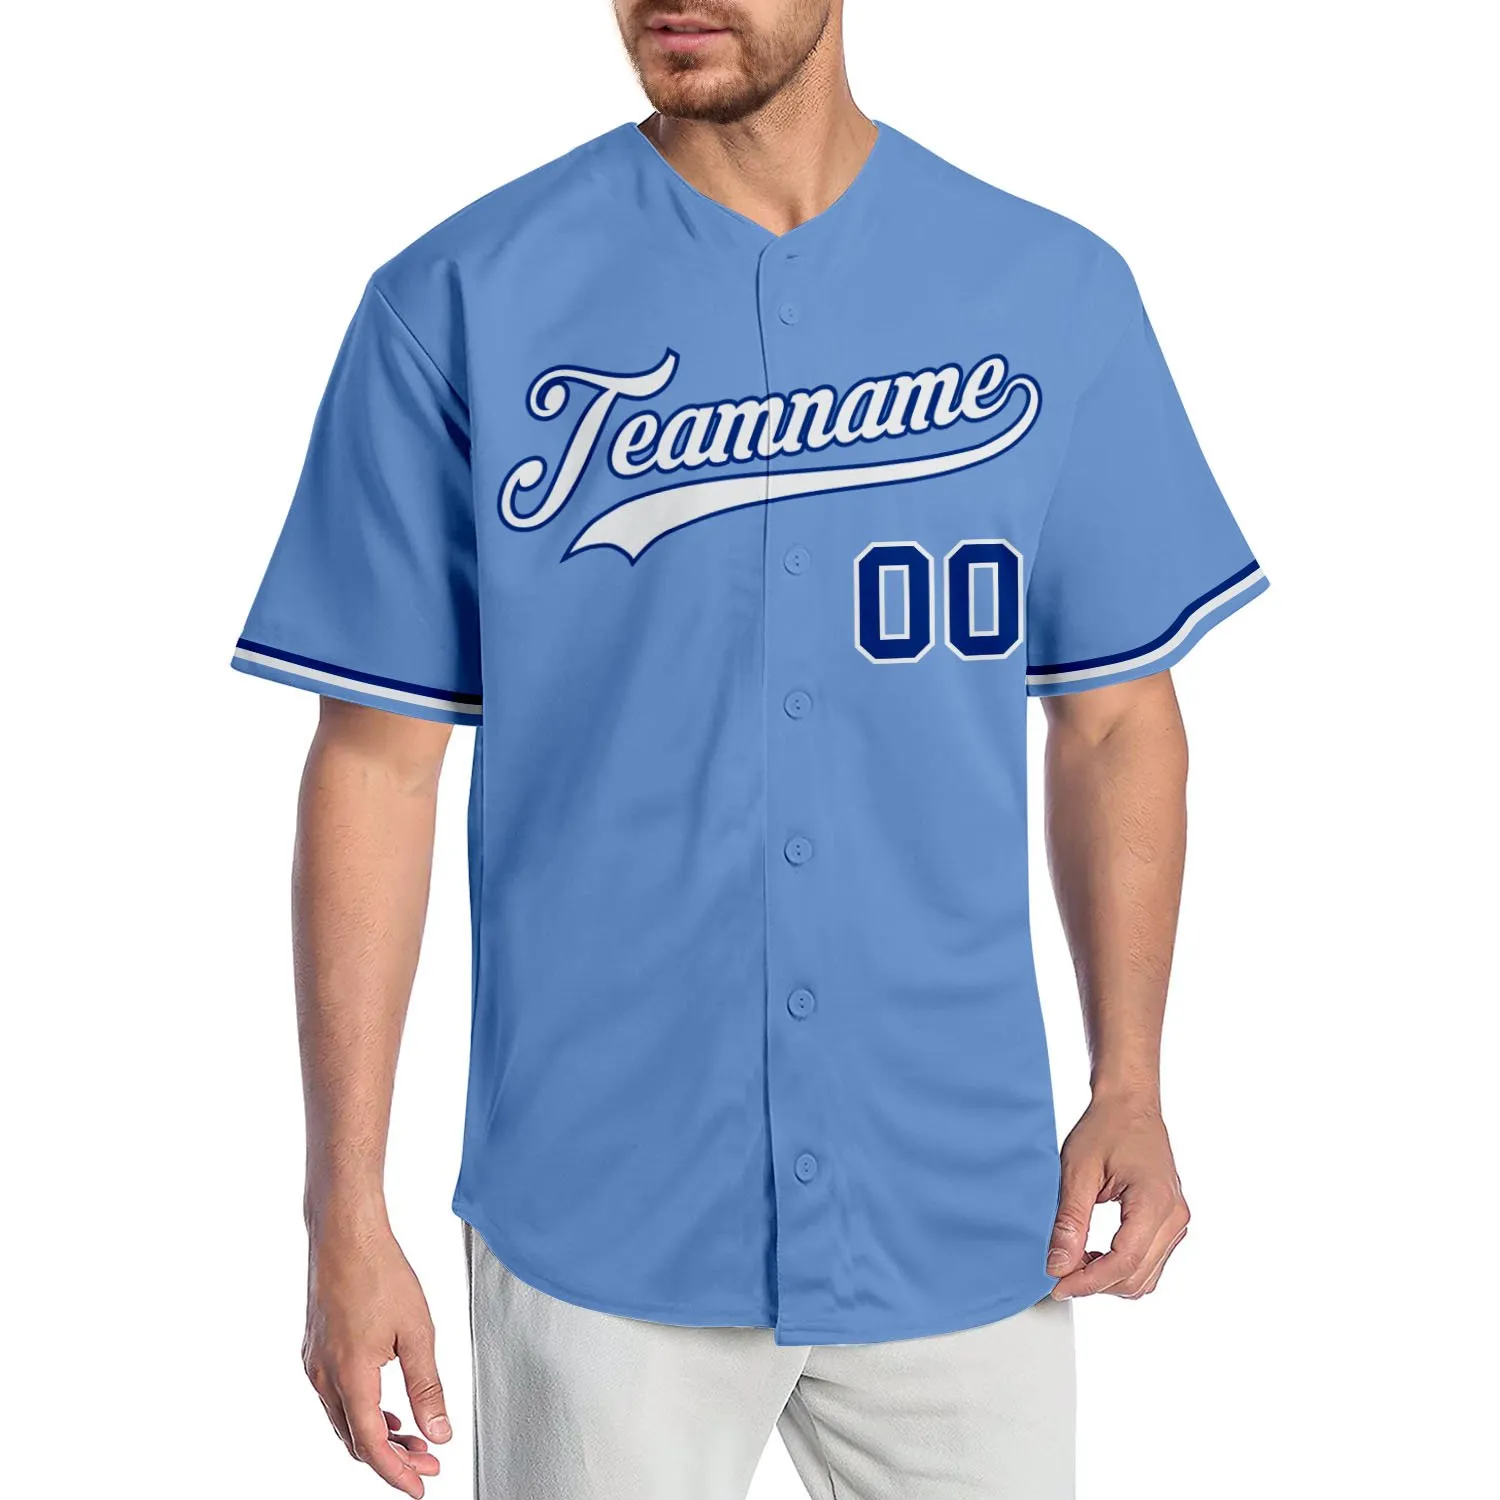 Niestandardowy jasnoniebieski biały-royal-009 autentyczny koszulka baseballowa